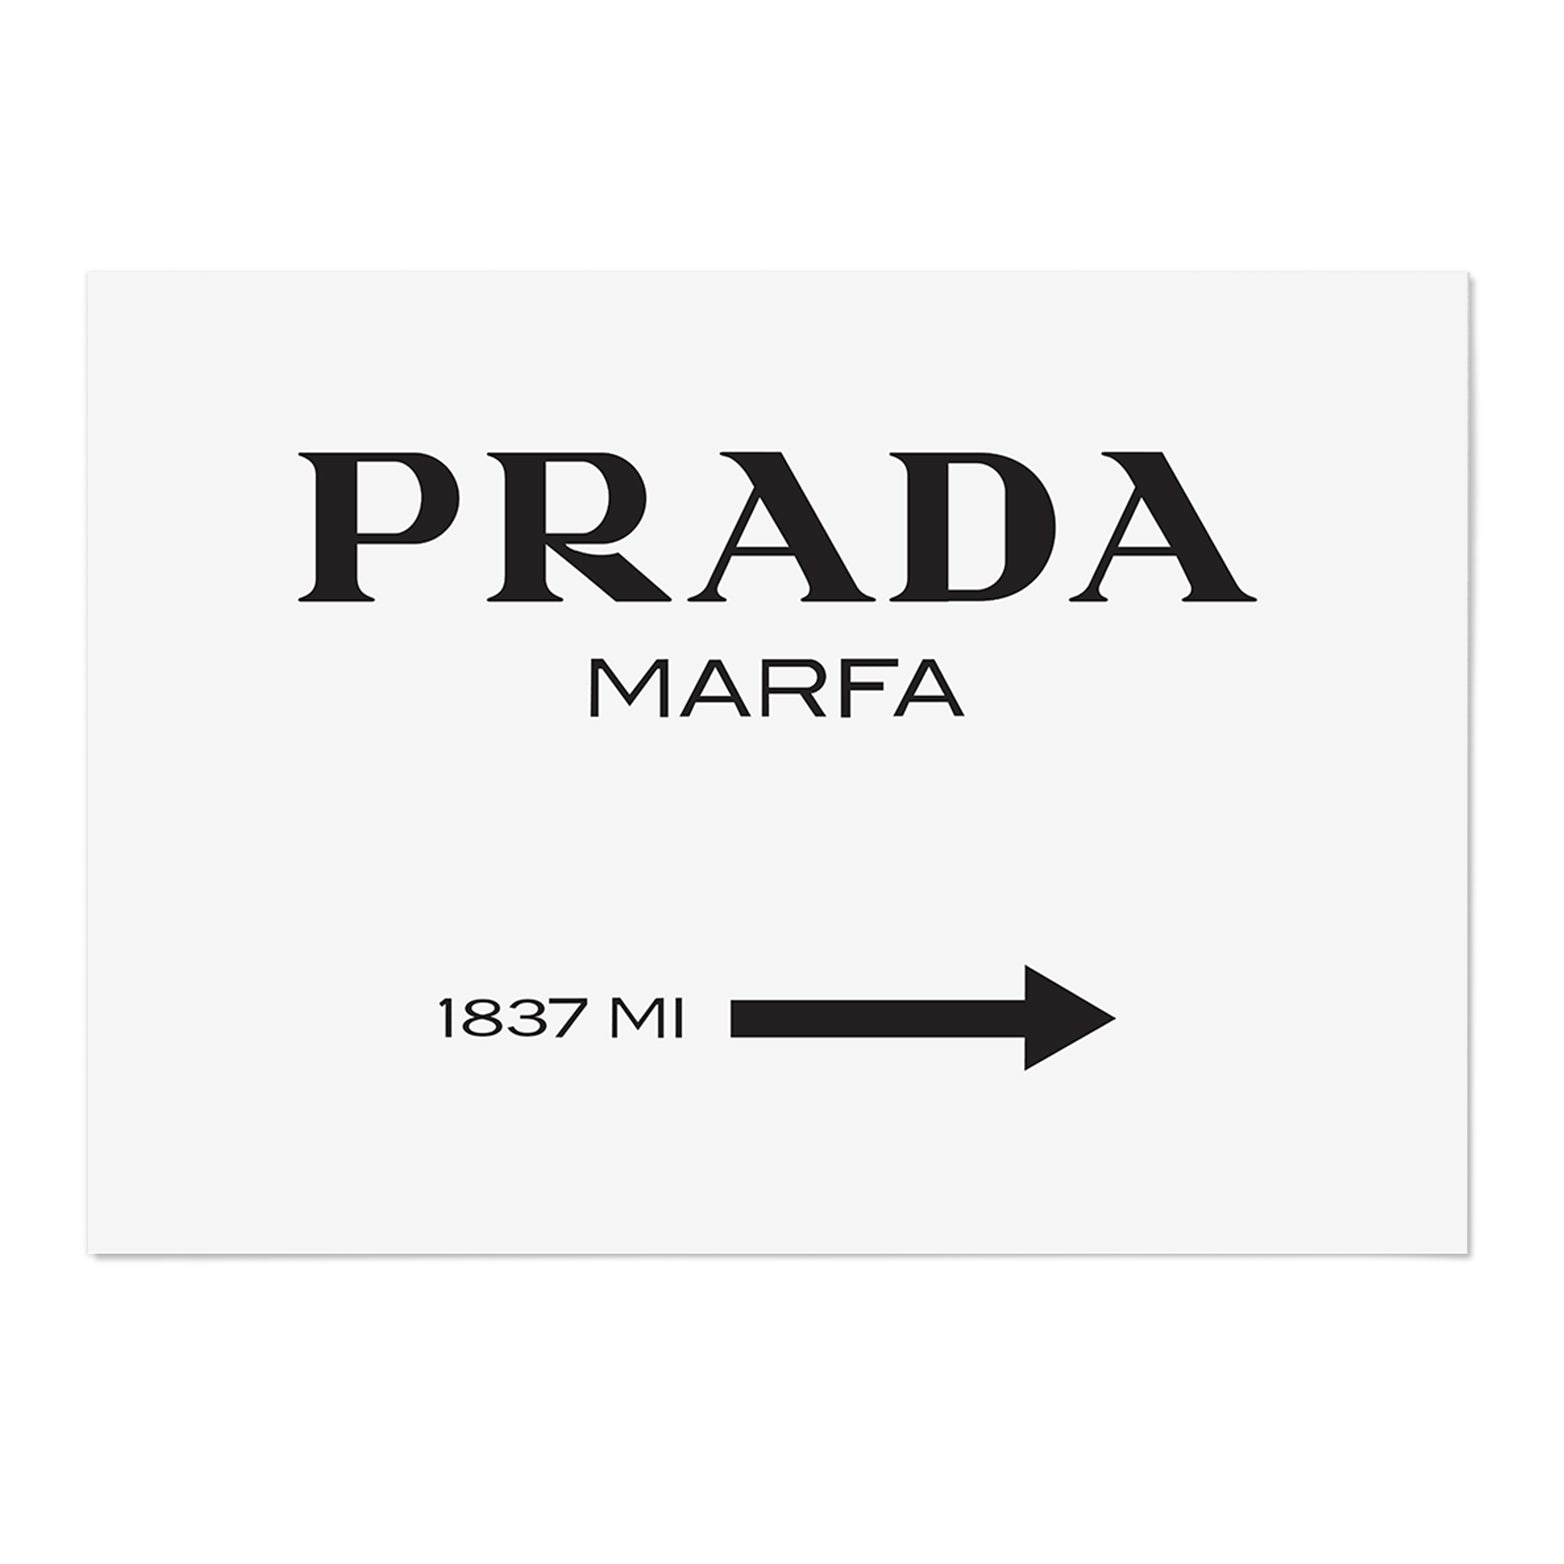 Prada Marfa 1837 Art Print - MJ Design Studio